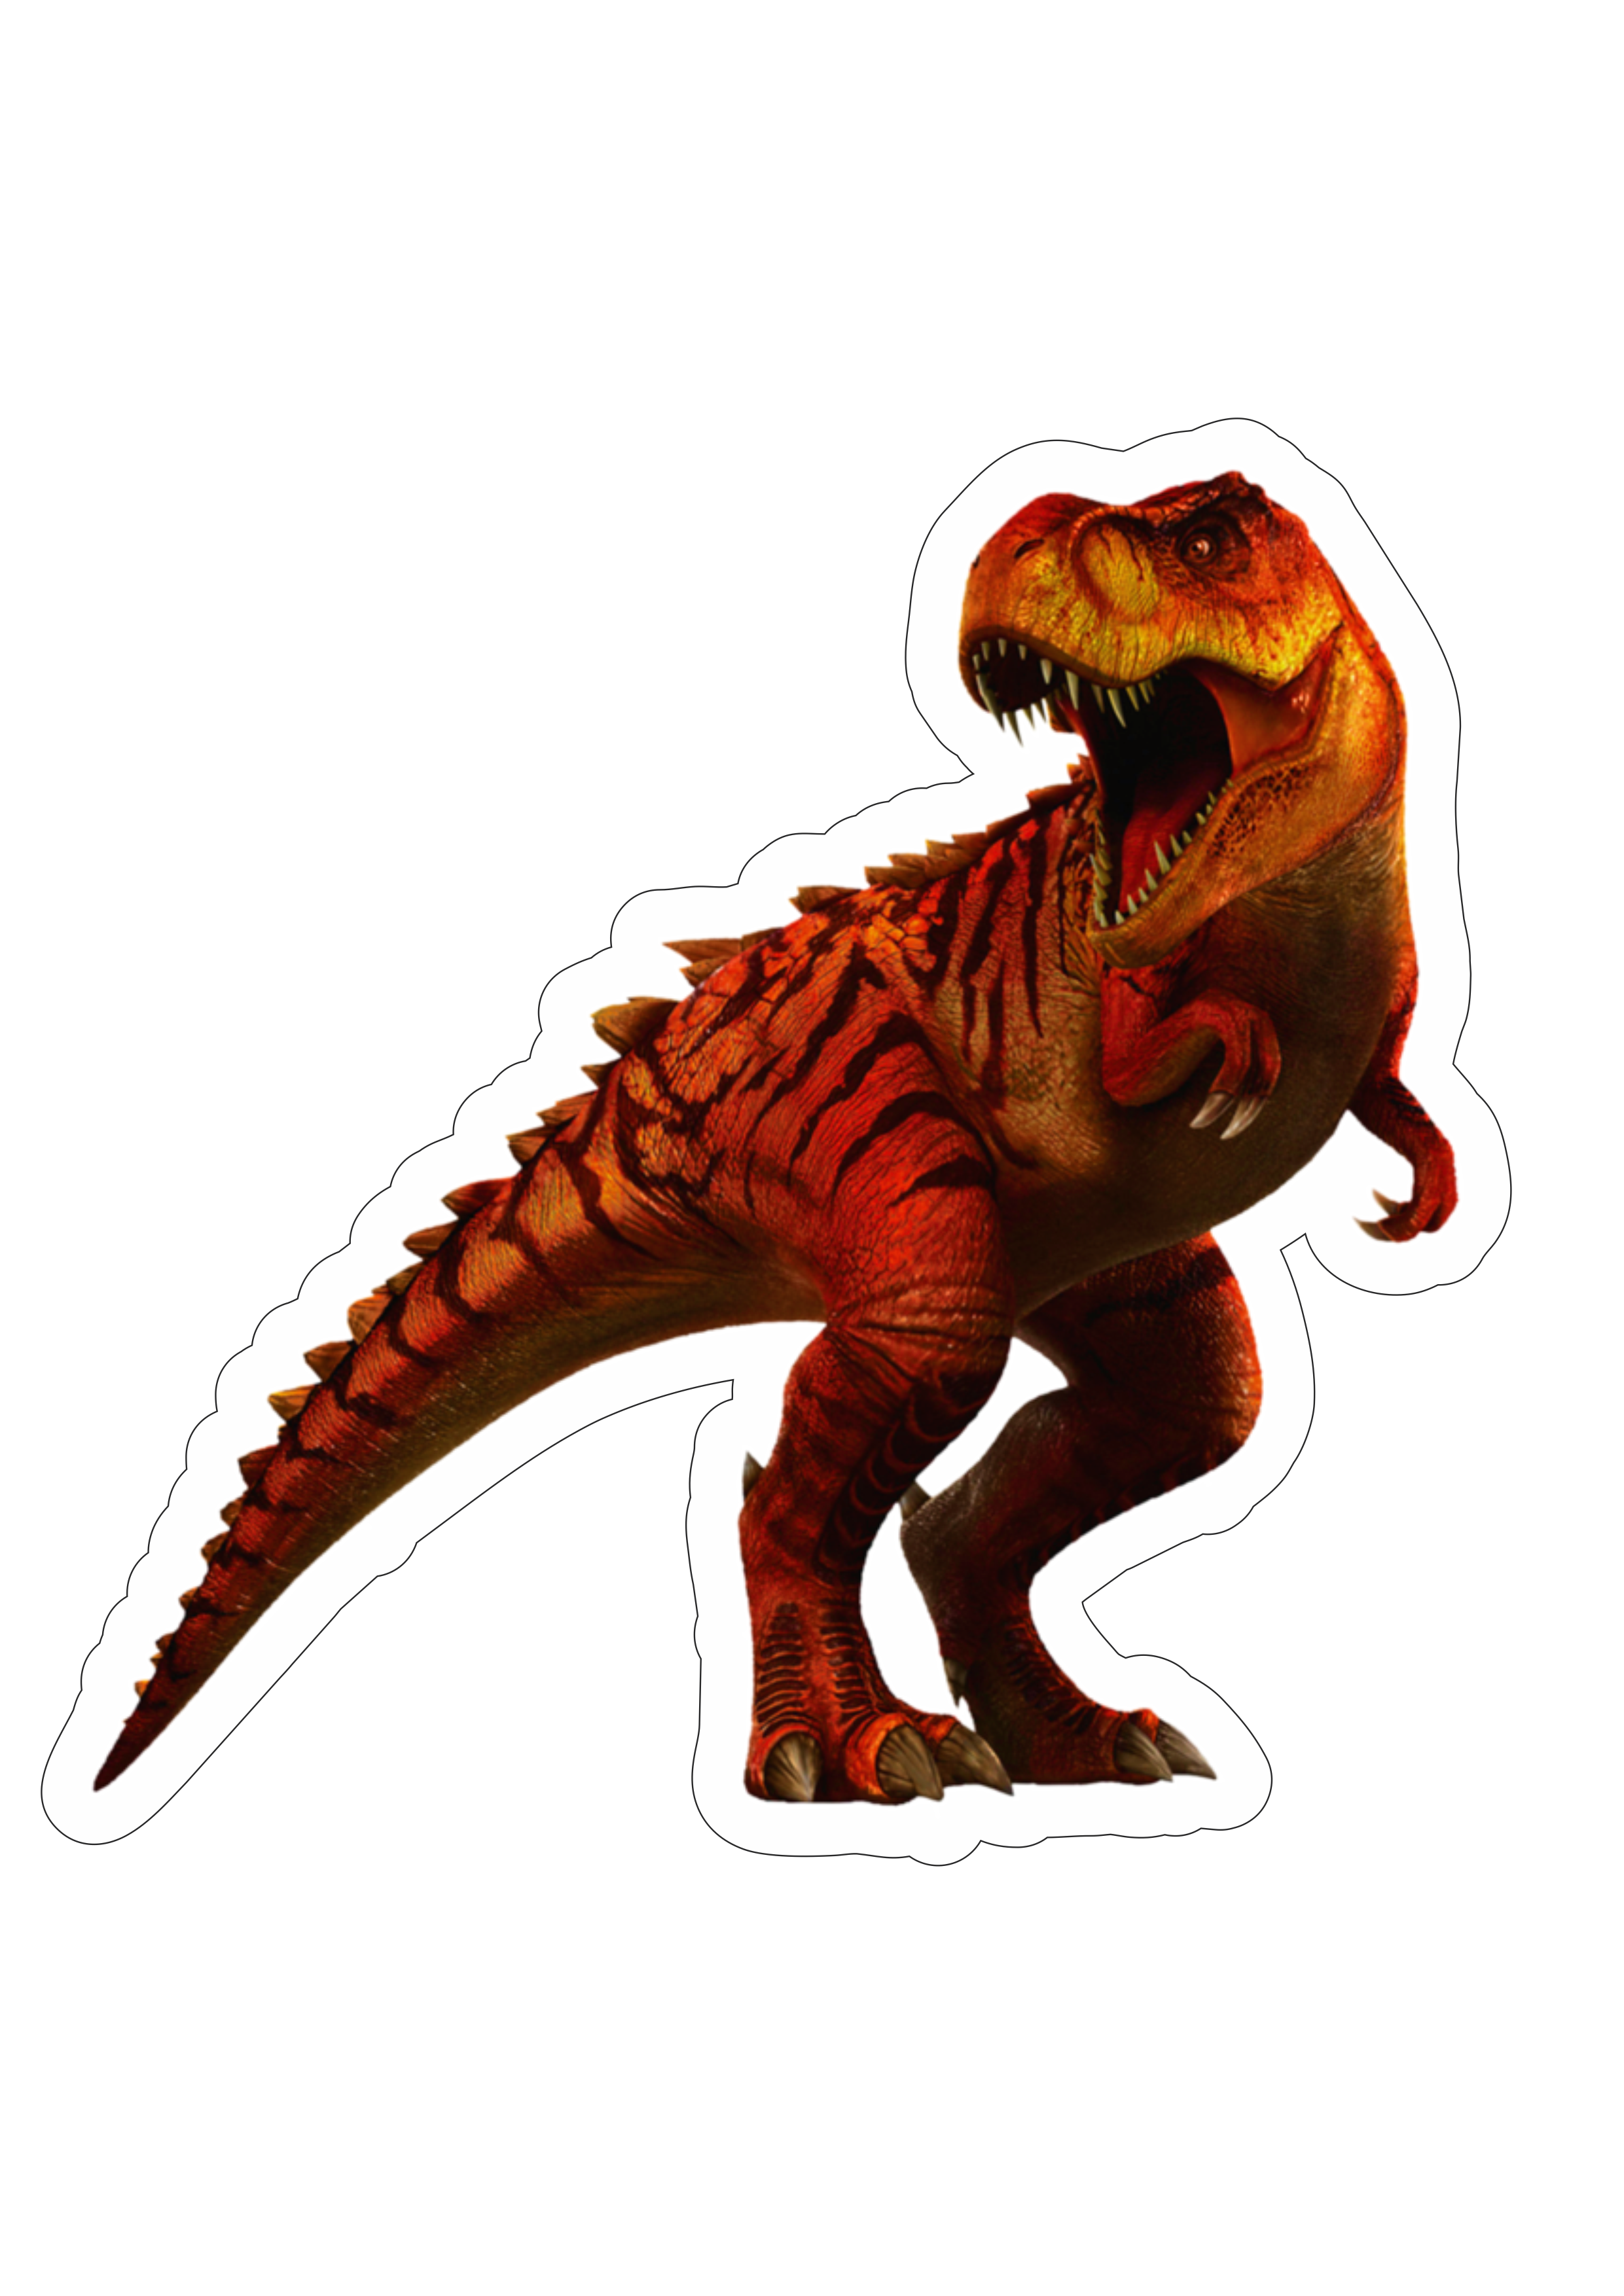 Jurassic Park carnossauro vermelho realista assustador sanguinário imagem sem fundo realista png